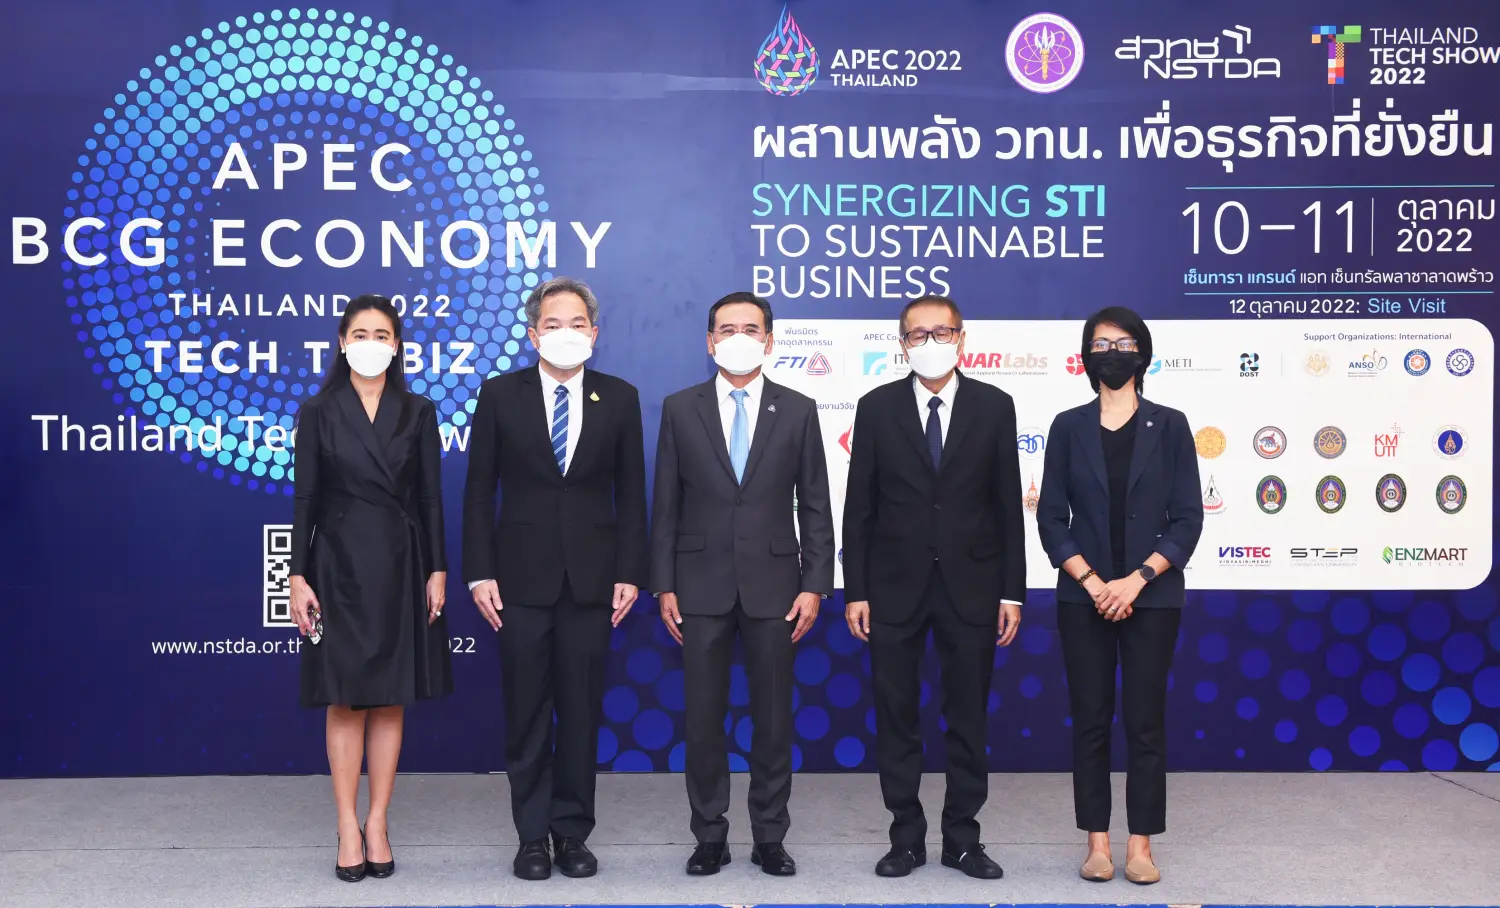 สวทช. พร้อมพันธมิตร 40 หน่วยงาน จัด งาน APEC BCG Economy Thailand 2022: Tech to Biz โชว์ ‘นวัตกรรมต่อยอดธุรกิจ’ กว่า 200 ผลงาน ตลาดอุตสาหกรรมไทย นวัตกรรมอุตสาหกรรมไทย พัฒนาอุตสาหกรรมไทยให้ก้าวหน้า 1663736362583